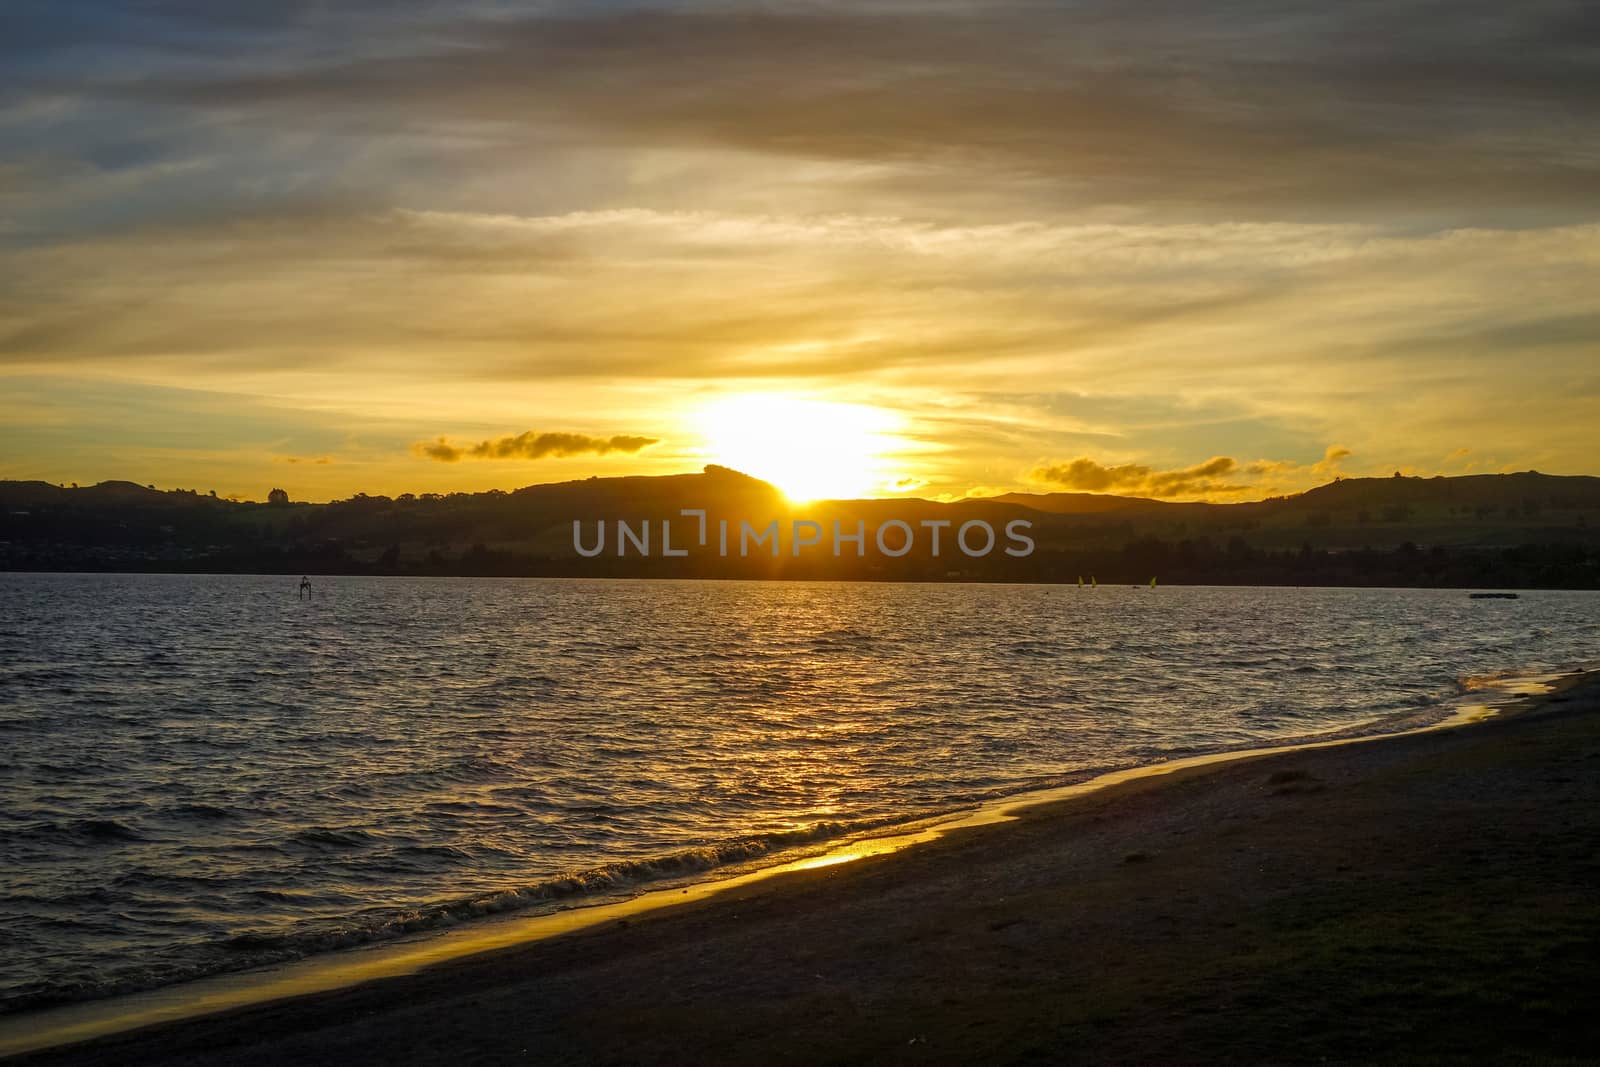 Taupo Lake landscape at sunset, New Zealand